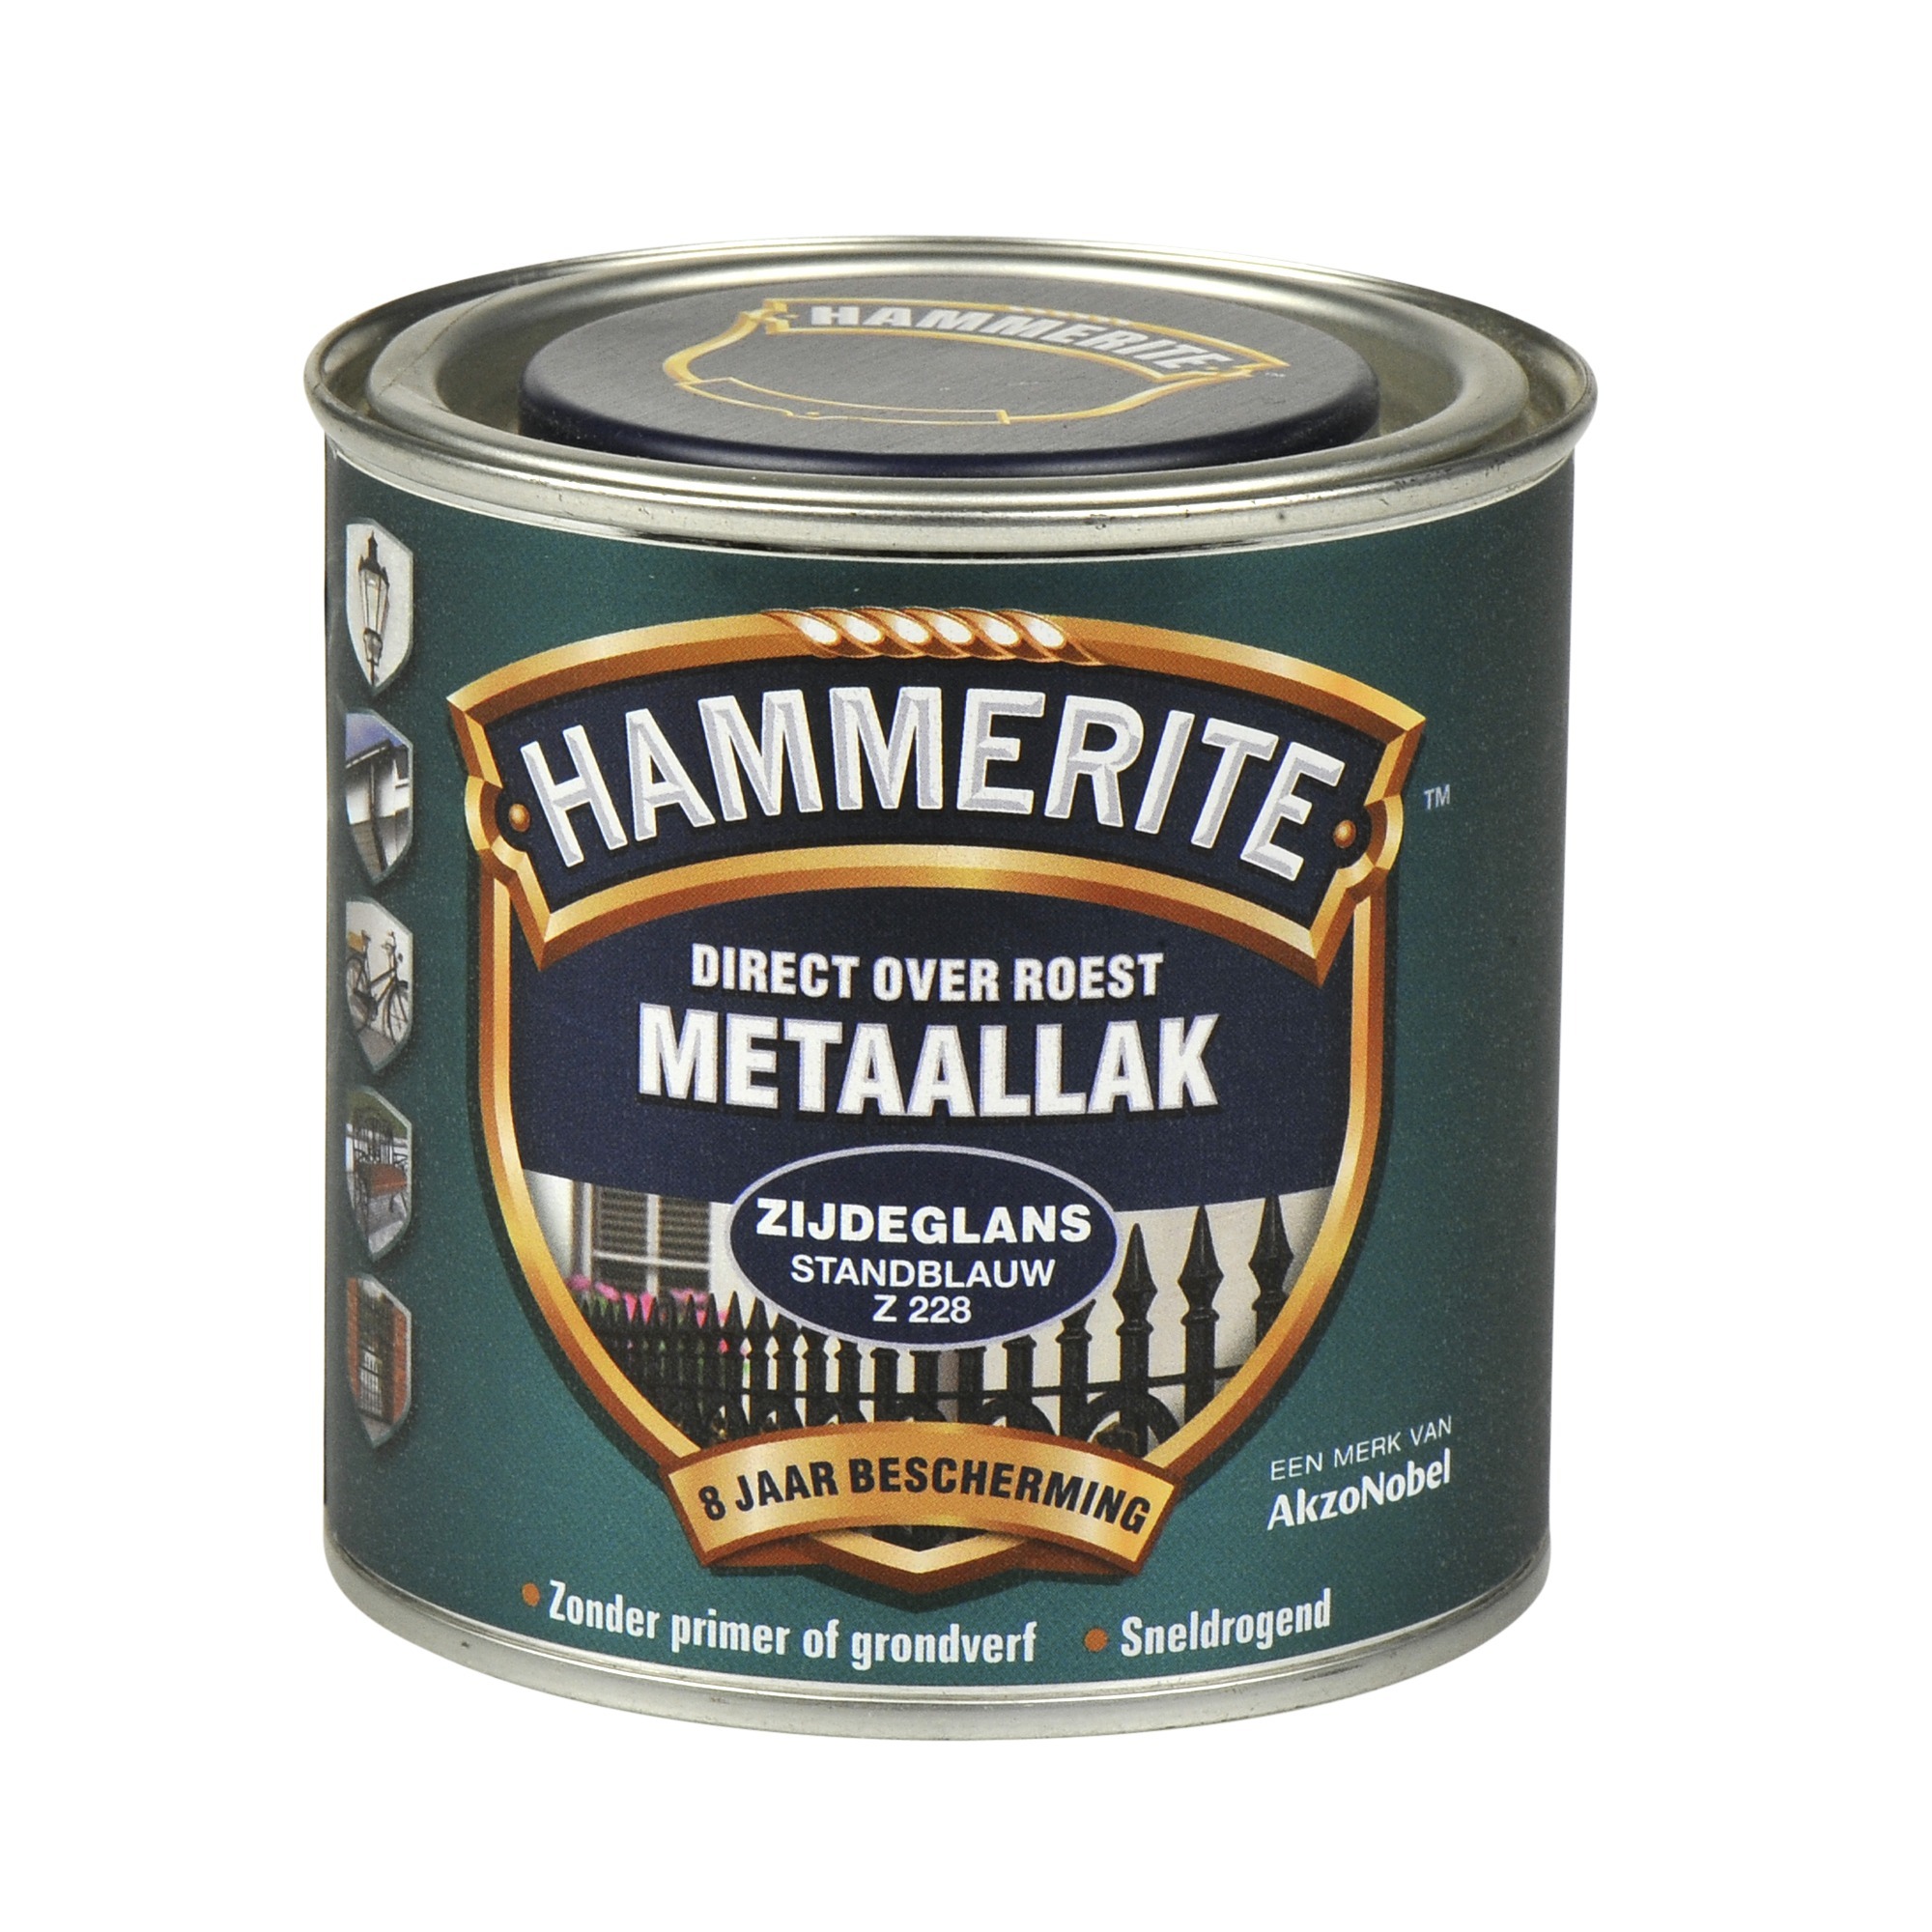 Hammerite direct over roest metaallak zijdeglans standblauw - 250 ml